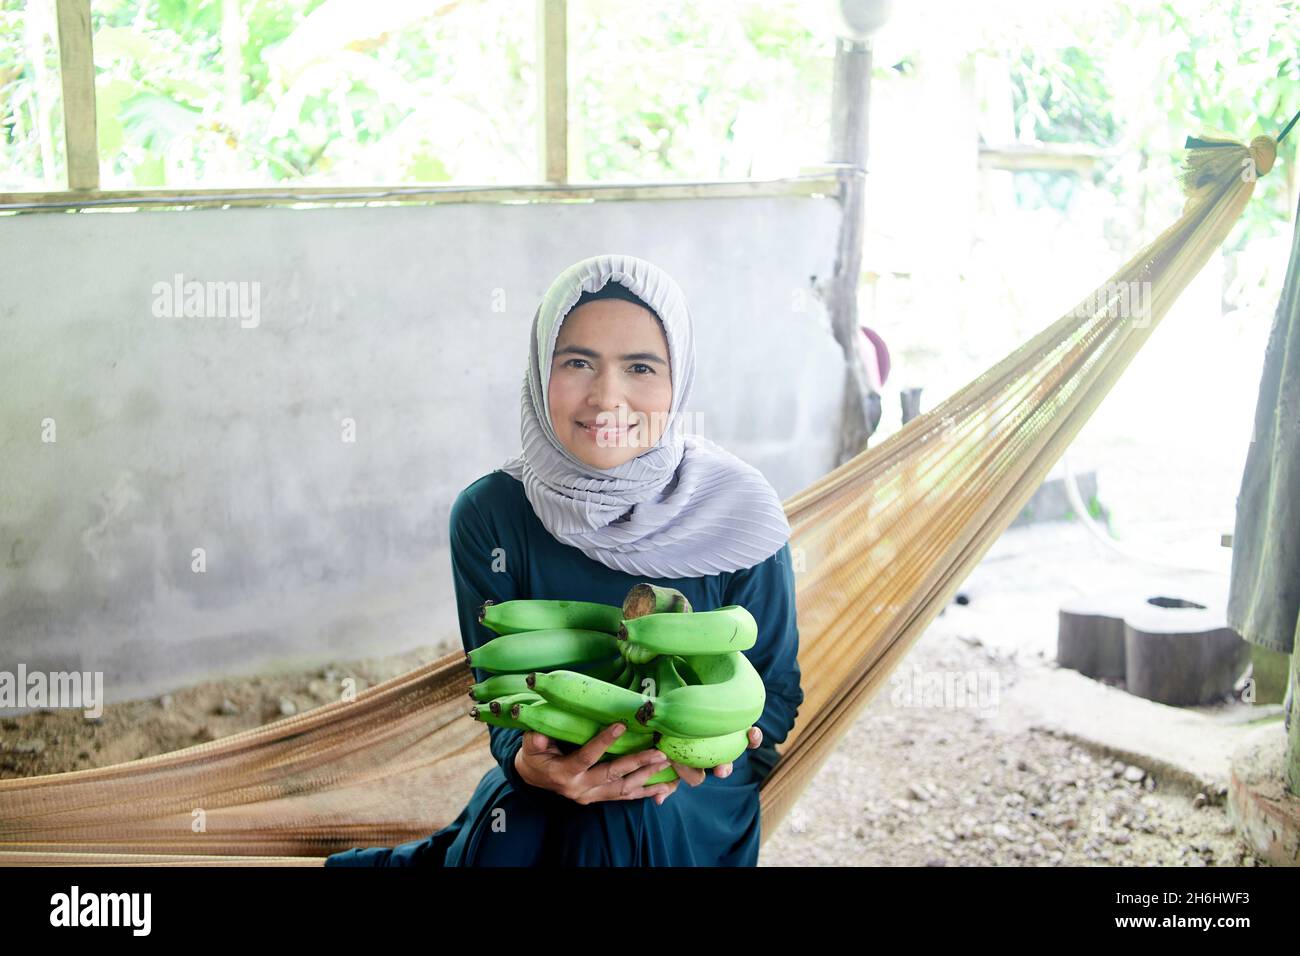 Femme musulmane assise sur un berceau en filet et tenant une bande de banane verte Banque D'Images